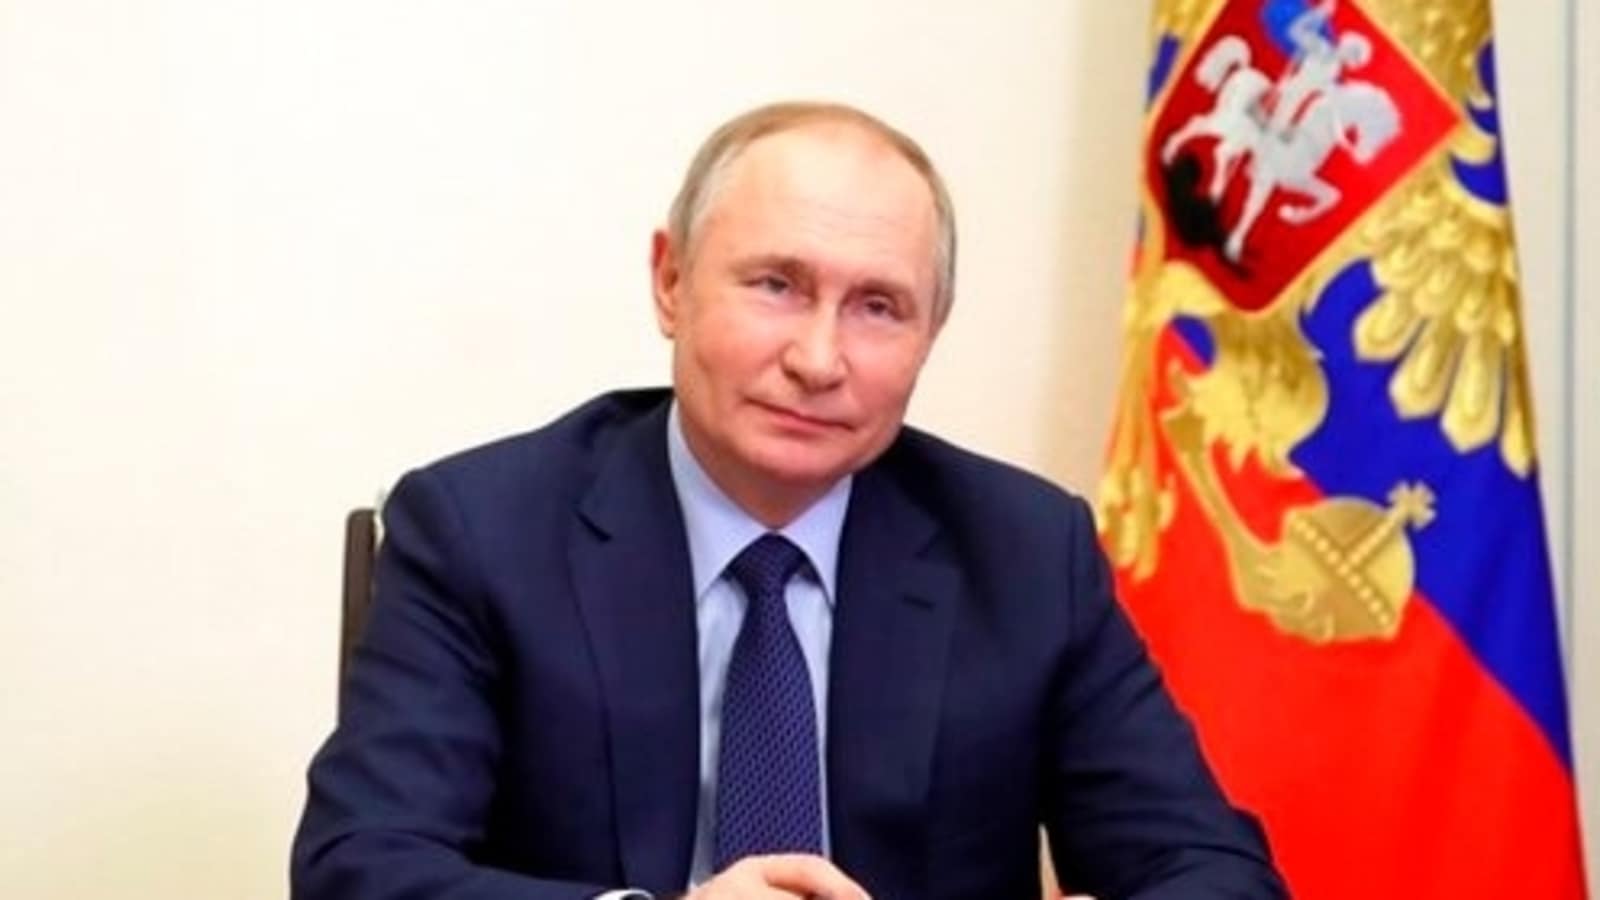 Pengawal Putin mengumpulkan kotorannya dalam perjalanan ke luar negeri dan membawanya pulang: Laporan |  berita Dunia